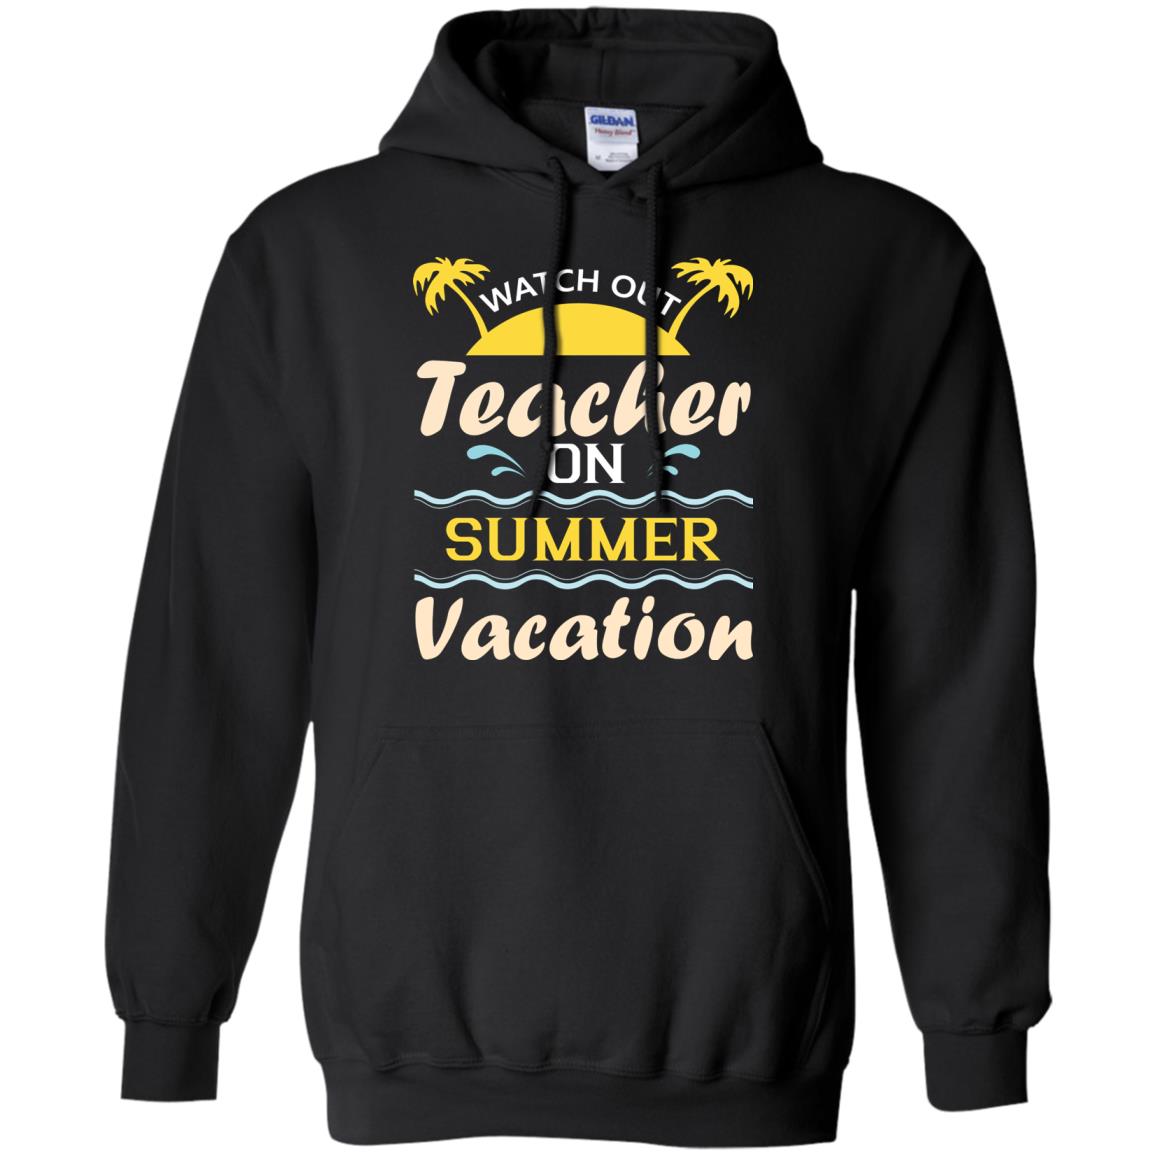 Watch Out Teacher On Summer Vacation Shirt For TeacherG185 Gildan Pullover Hoodie 8 oz.